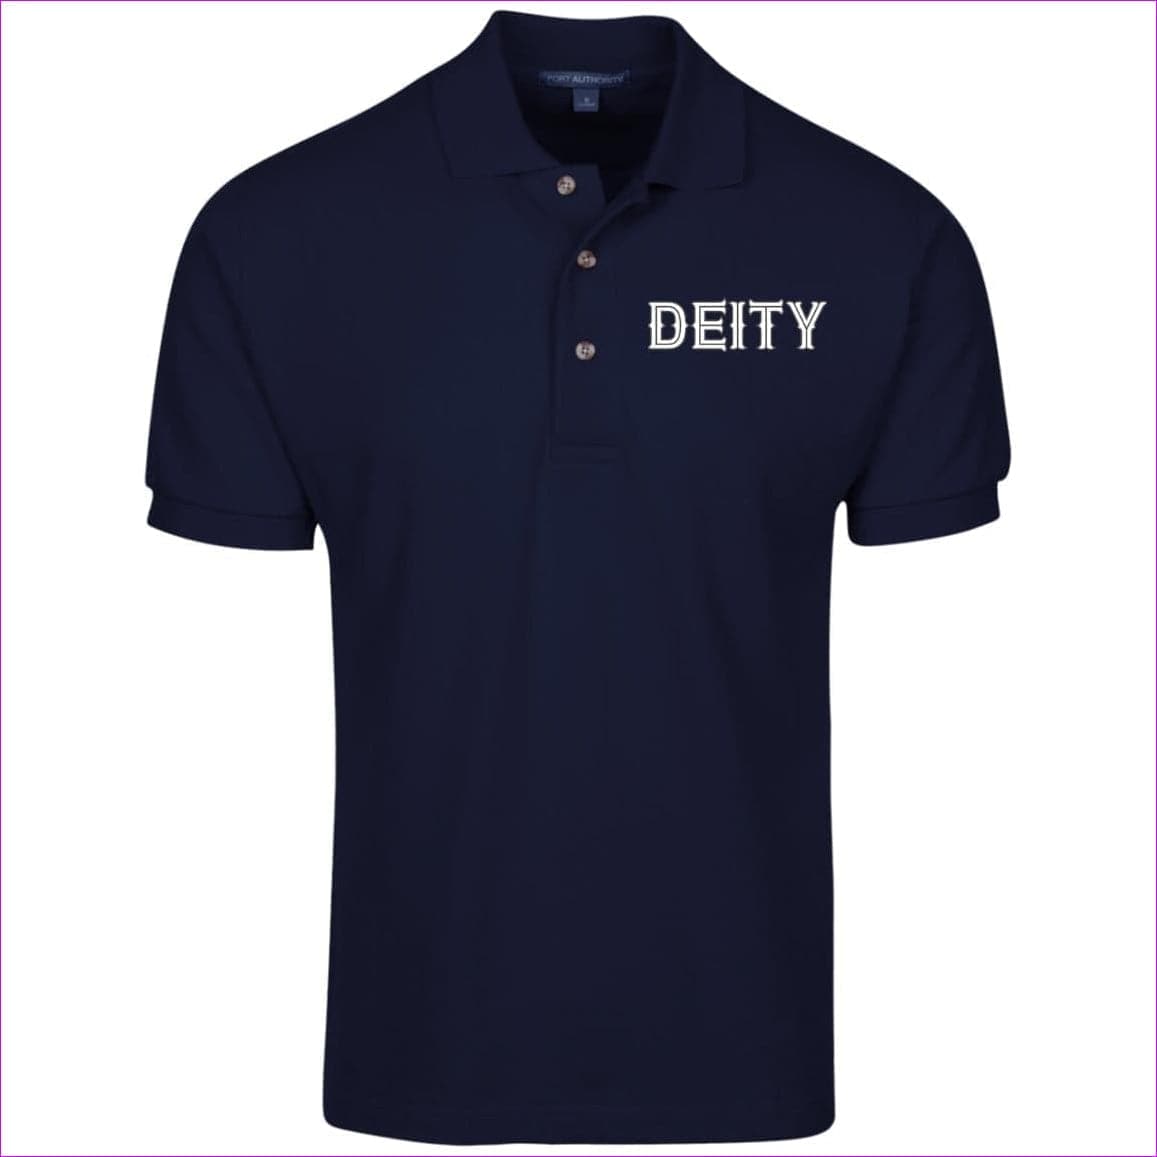 Navy - Deity Cotton Pique Knit Polo - mens polo shirt at TFC&H Co.